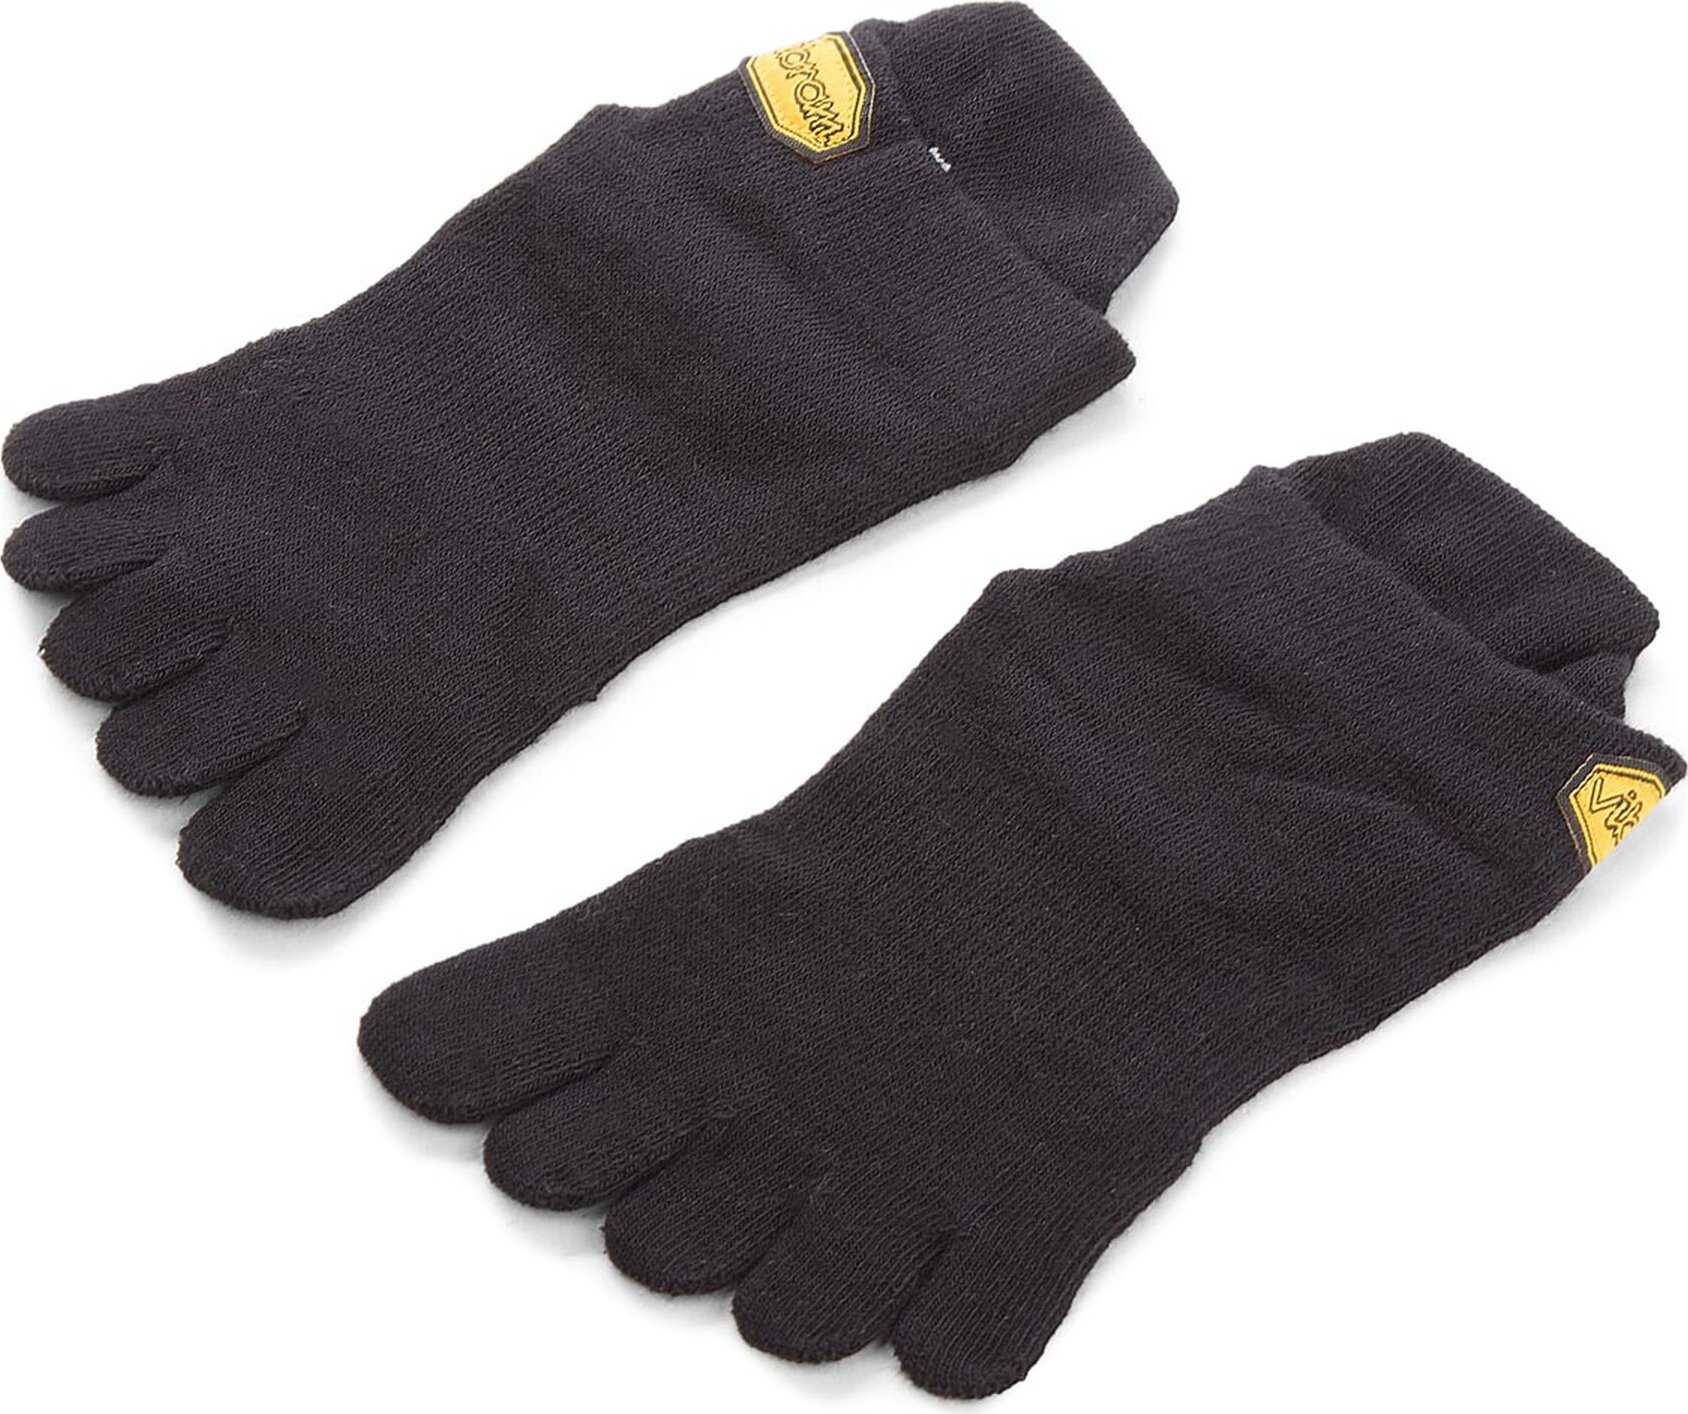 Ponožky Kotníkové Unisex Vibram Fivefingers Ahtletic No Show S15N02 S Black